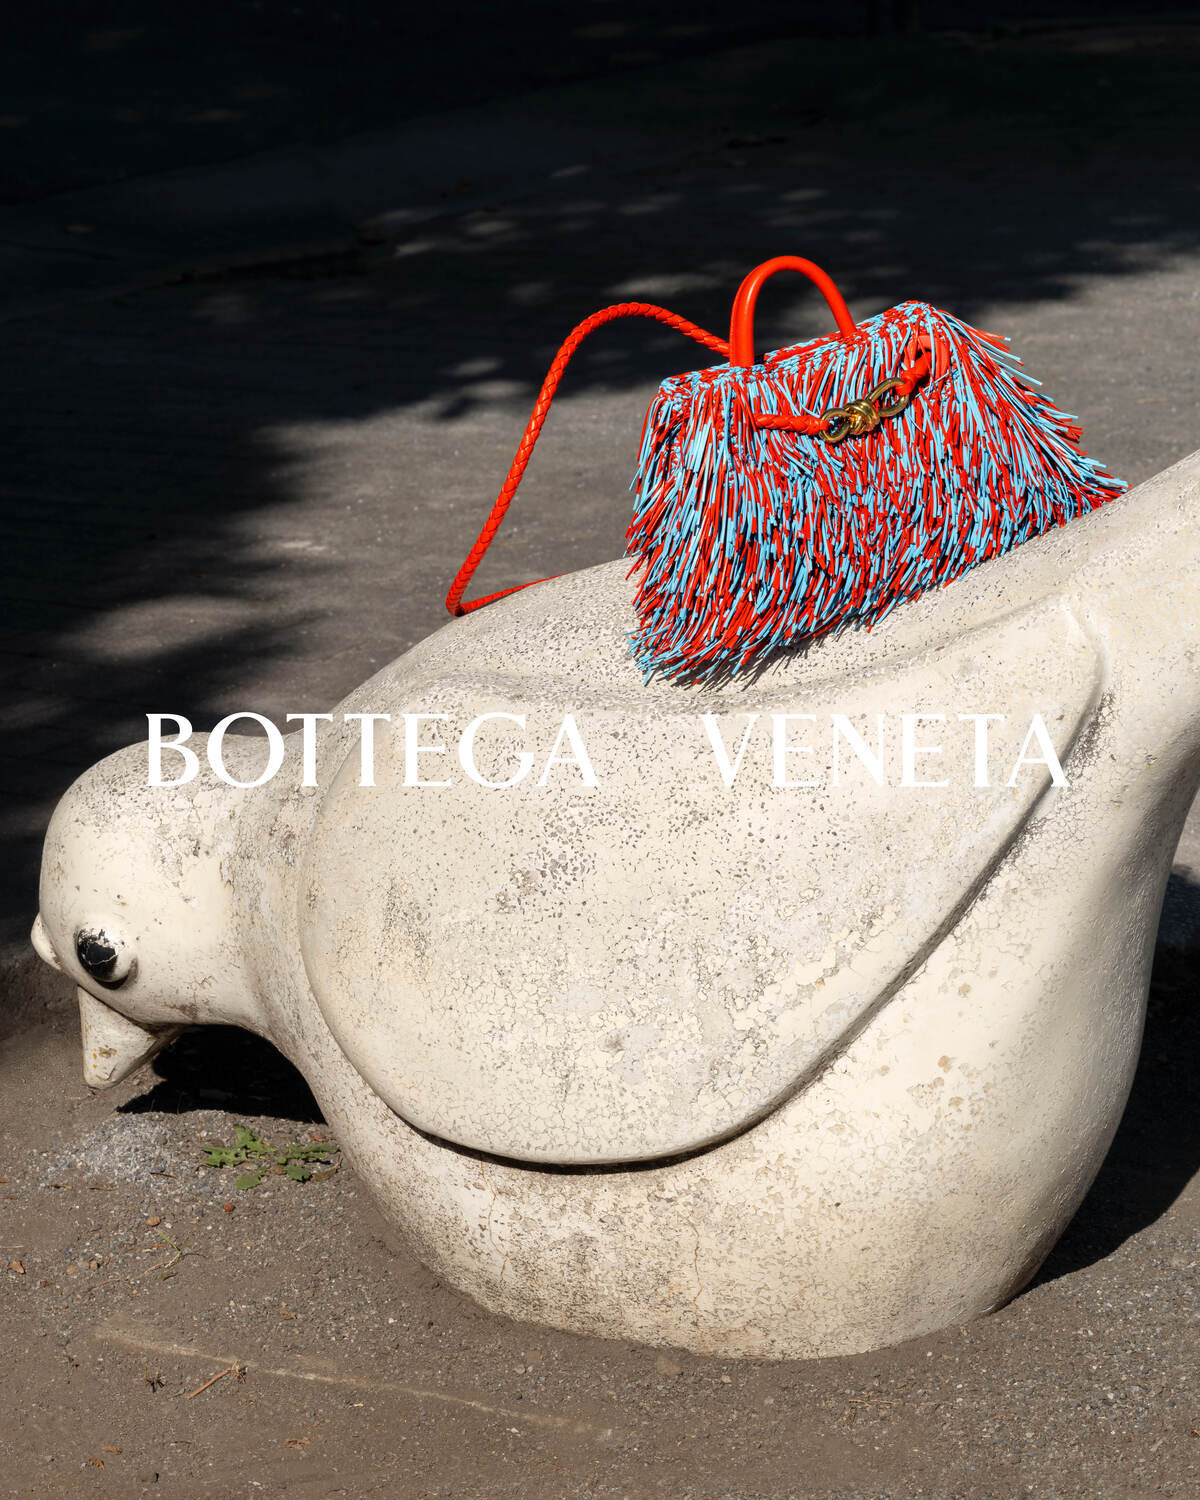 Bottega Veneta представив весняно-літній кампейн